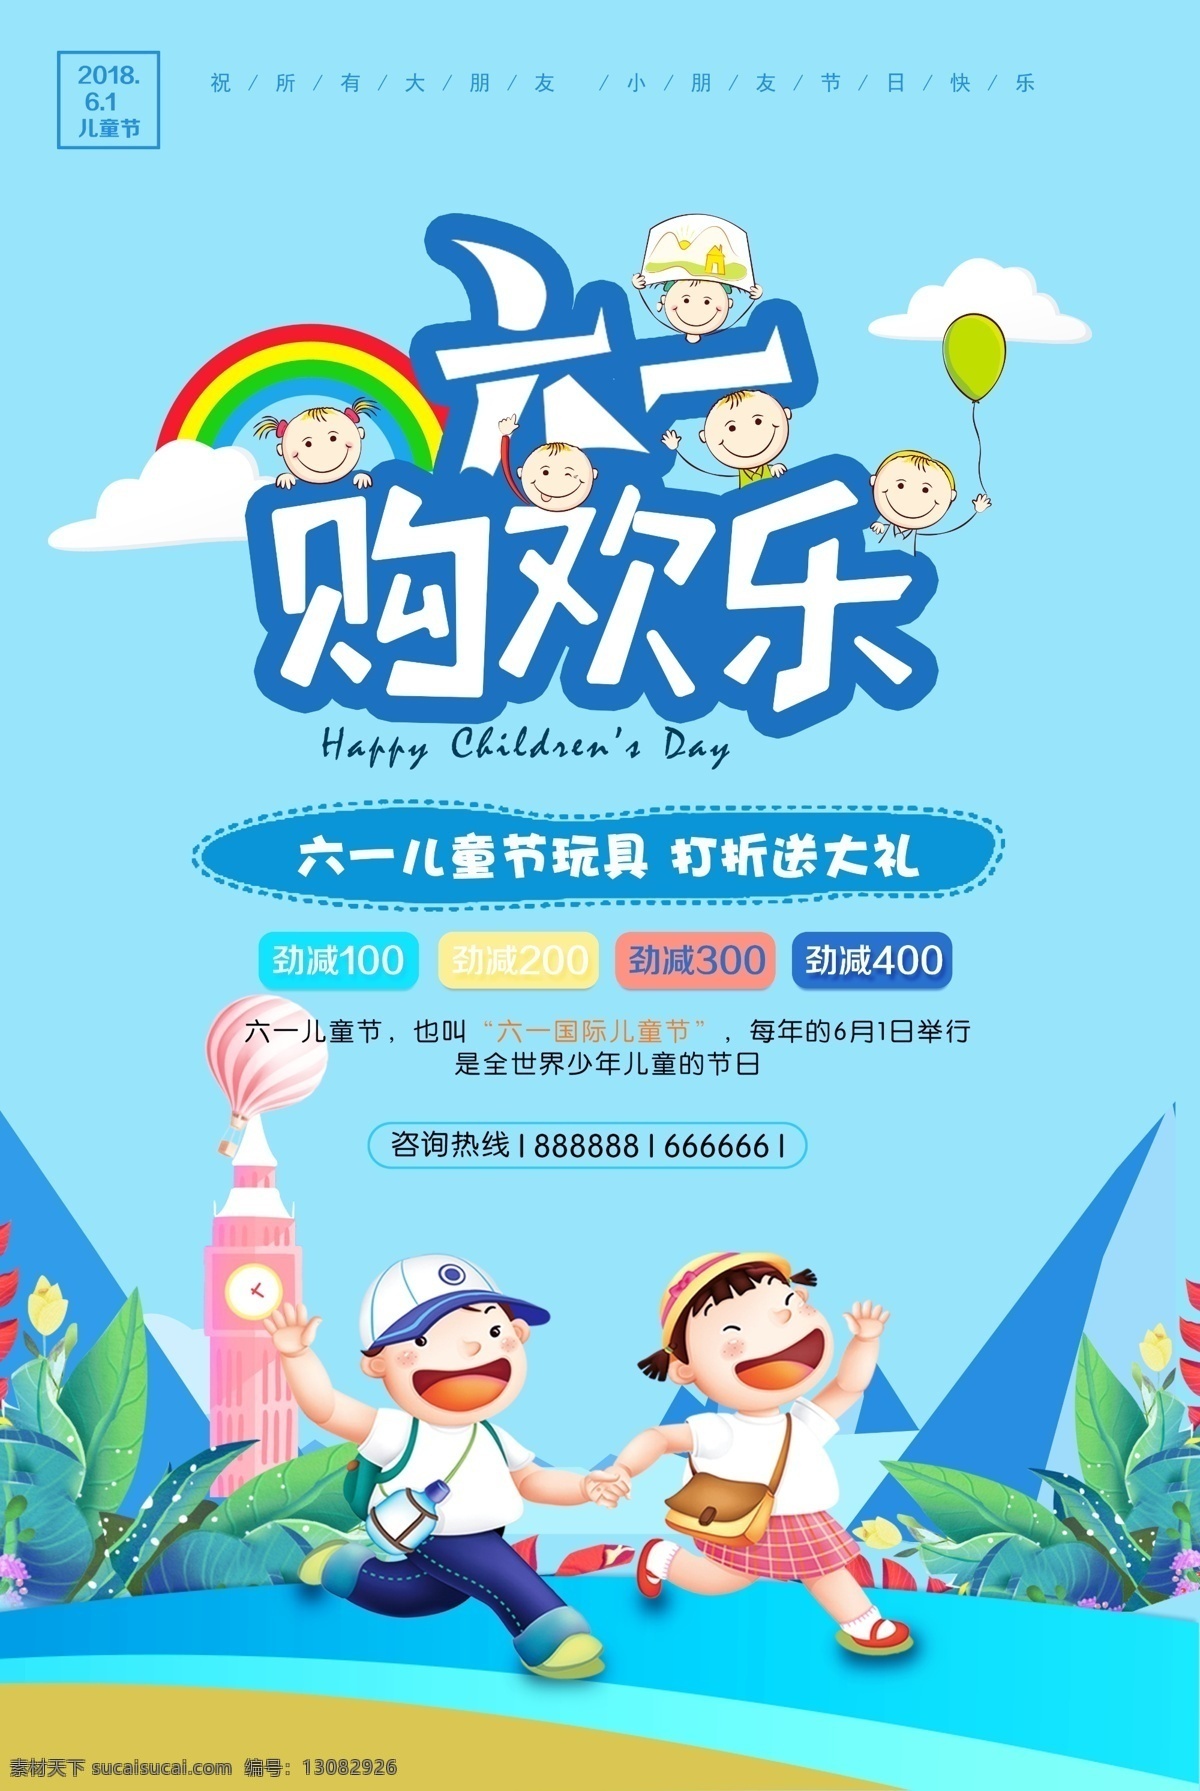 六一 儿童节 海报图片 海报 蓝色背景 彩虹 元素 儿童 分层